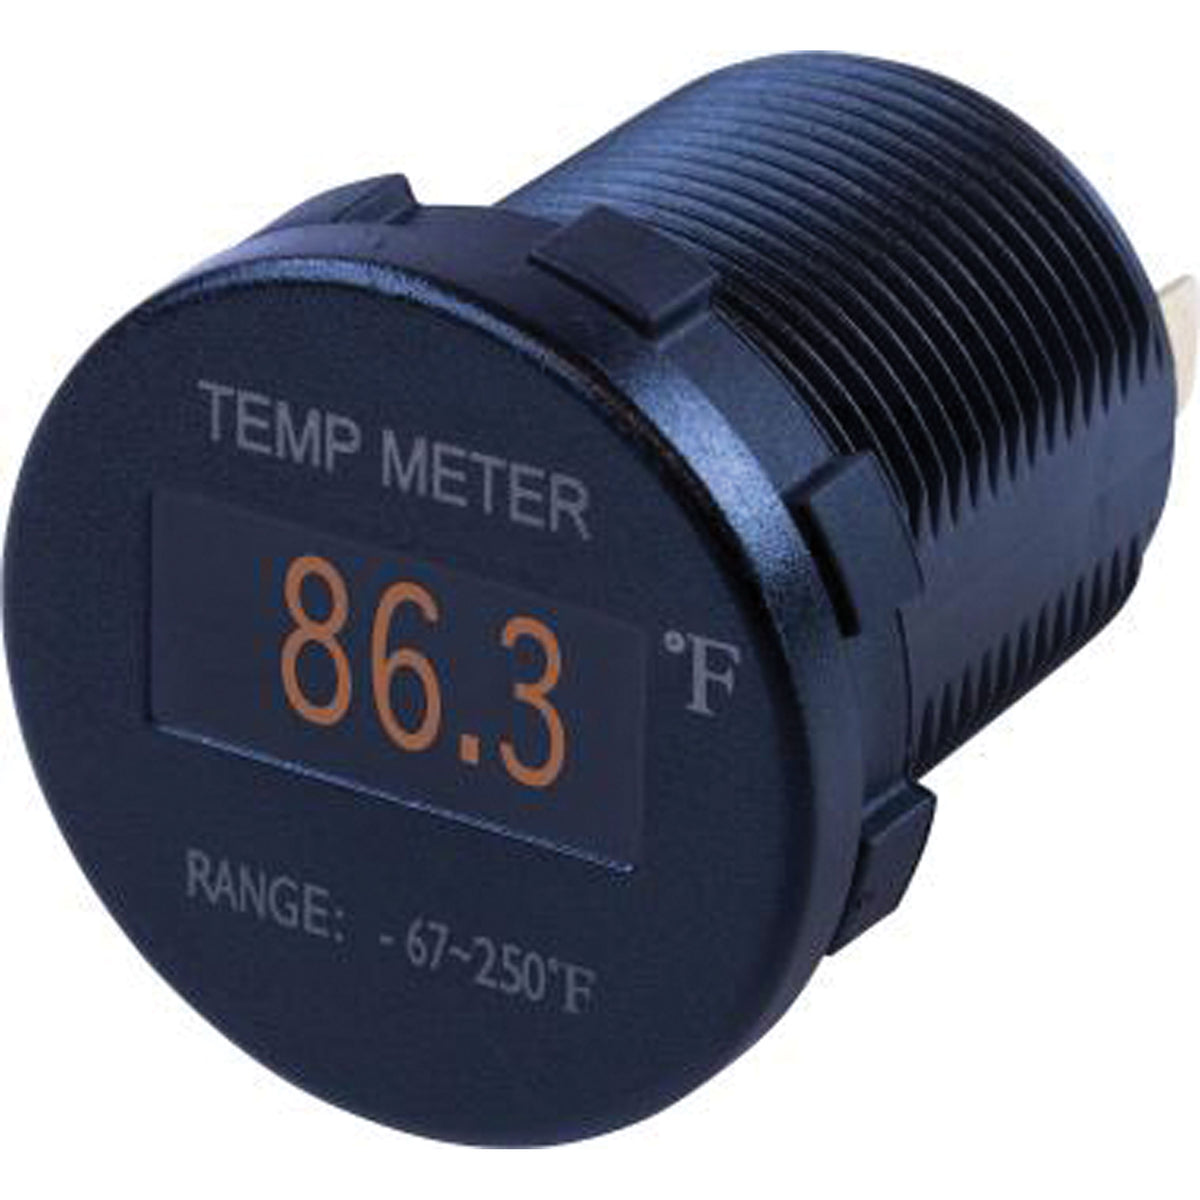 Sea-Dog 421610-1 Round OLED Temperature Meter - 1-7/16" Diameter, Black